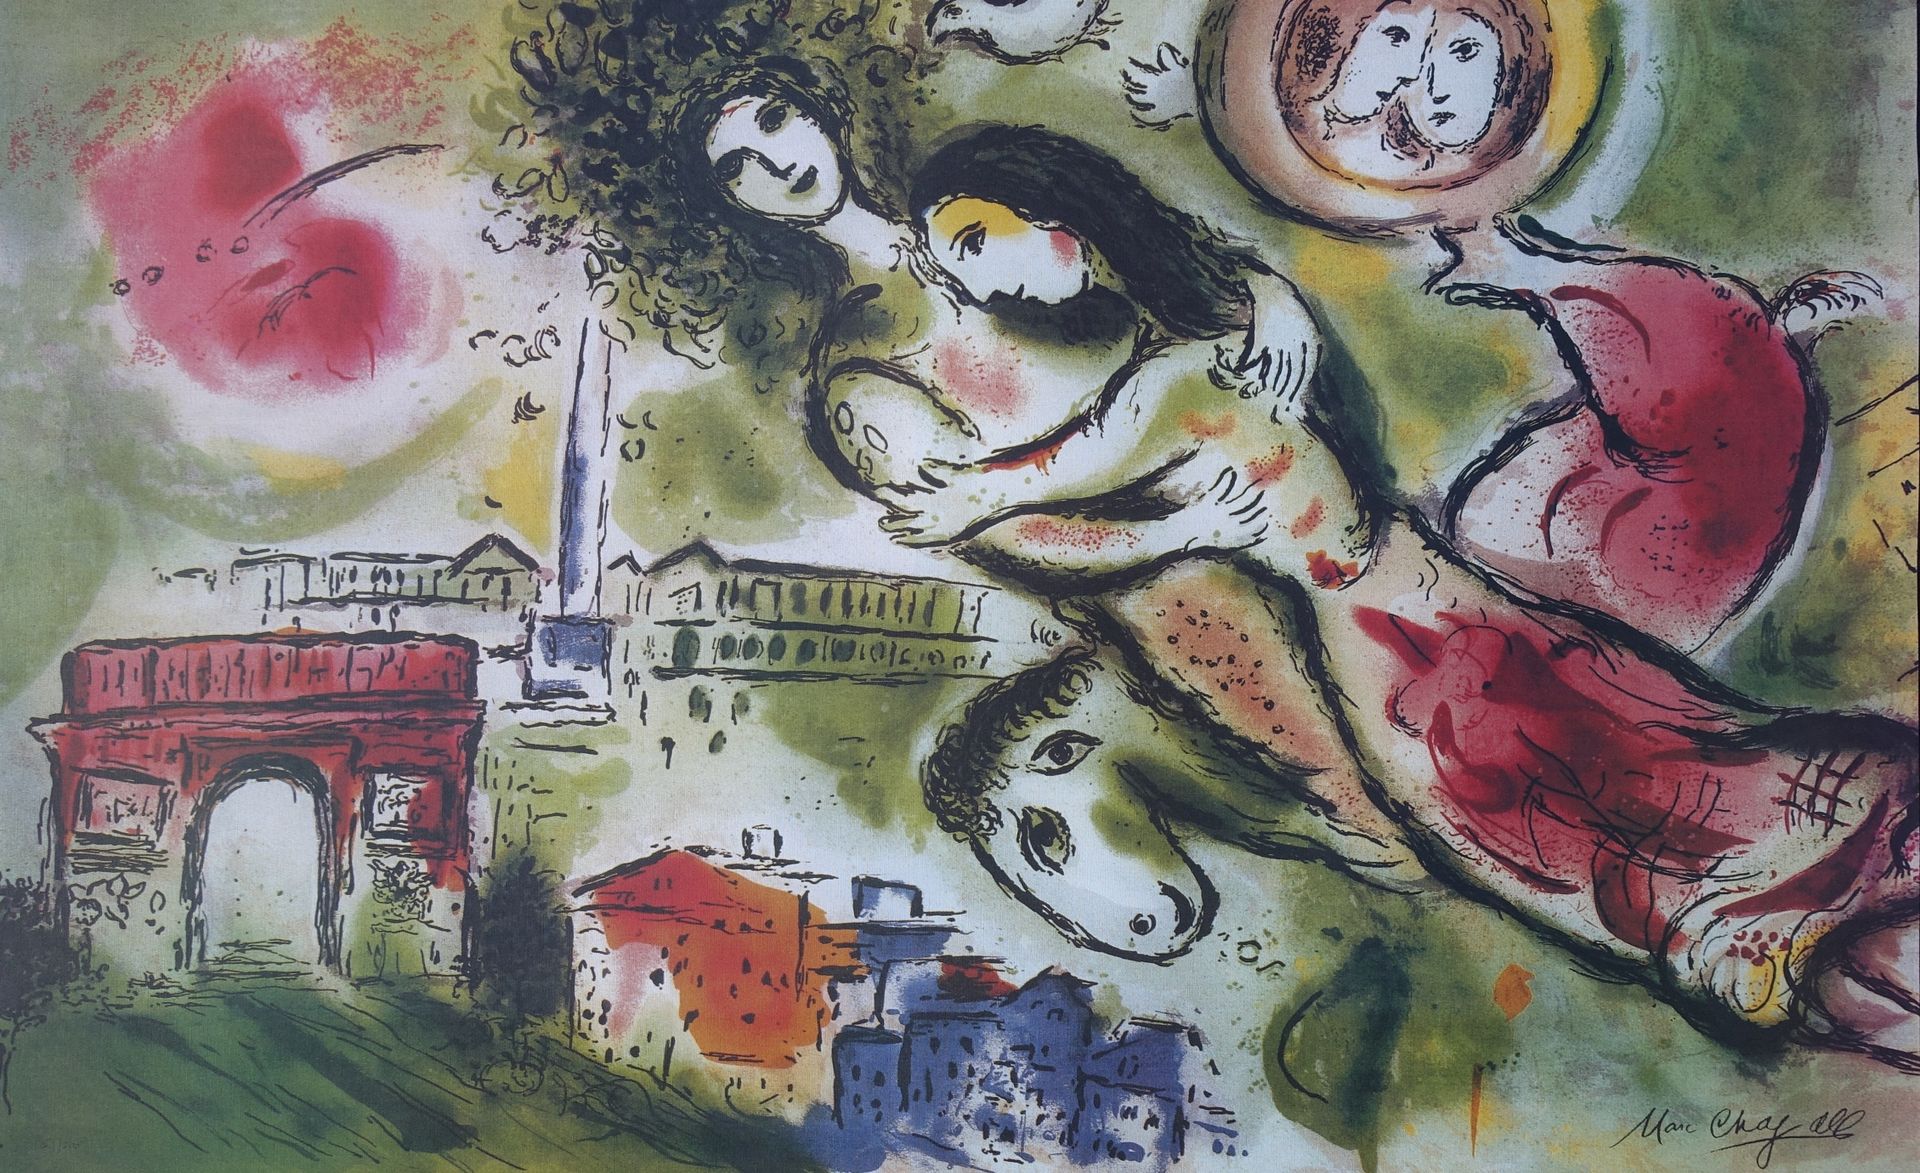 Marc Chagall 马克-夏加尔（1887-1985）（后）。

巴黎/罗密欧与朱丽叶

根据马克-夏加尔的作品制作的石印版画

板块中的签名

在有纹理&hellip;